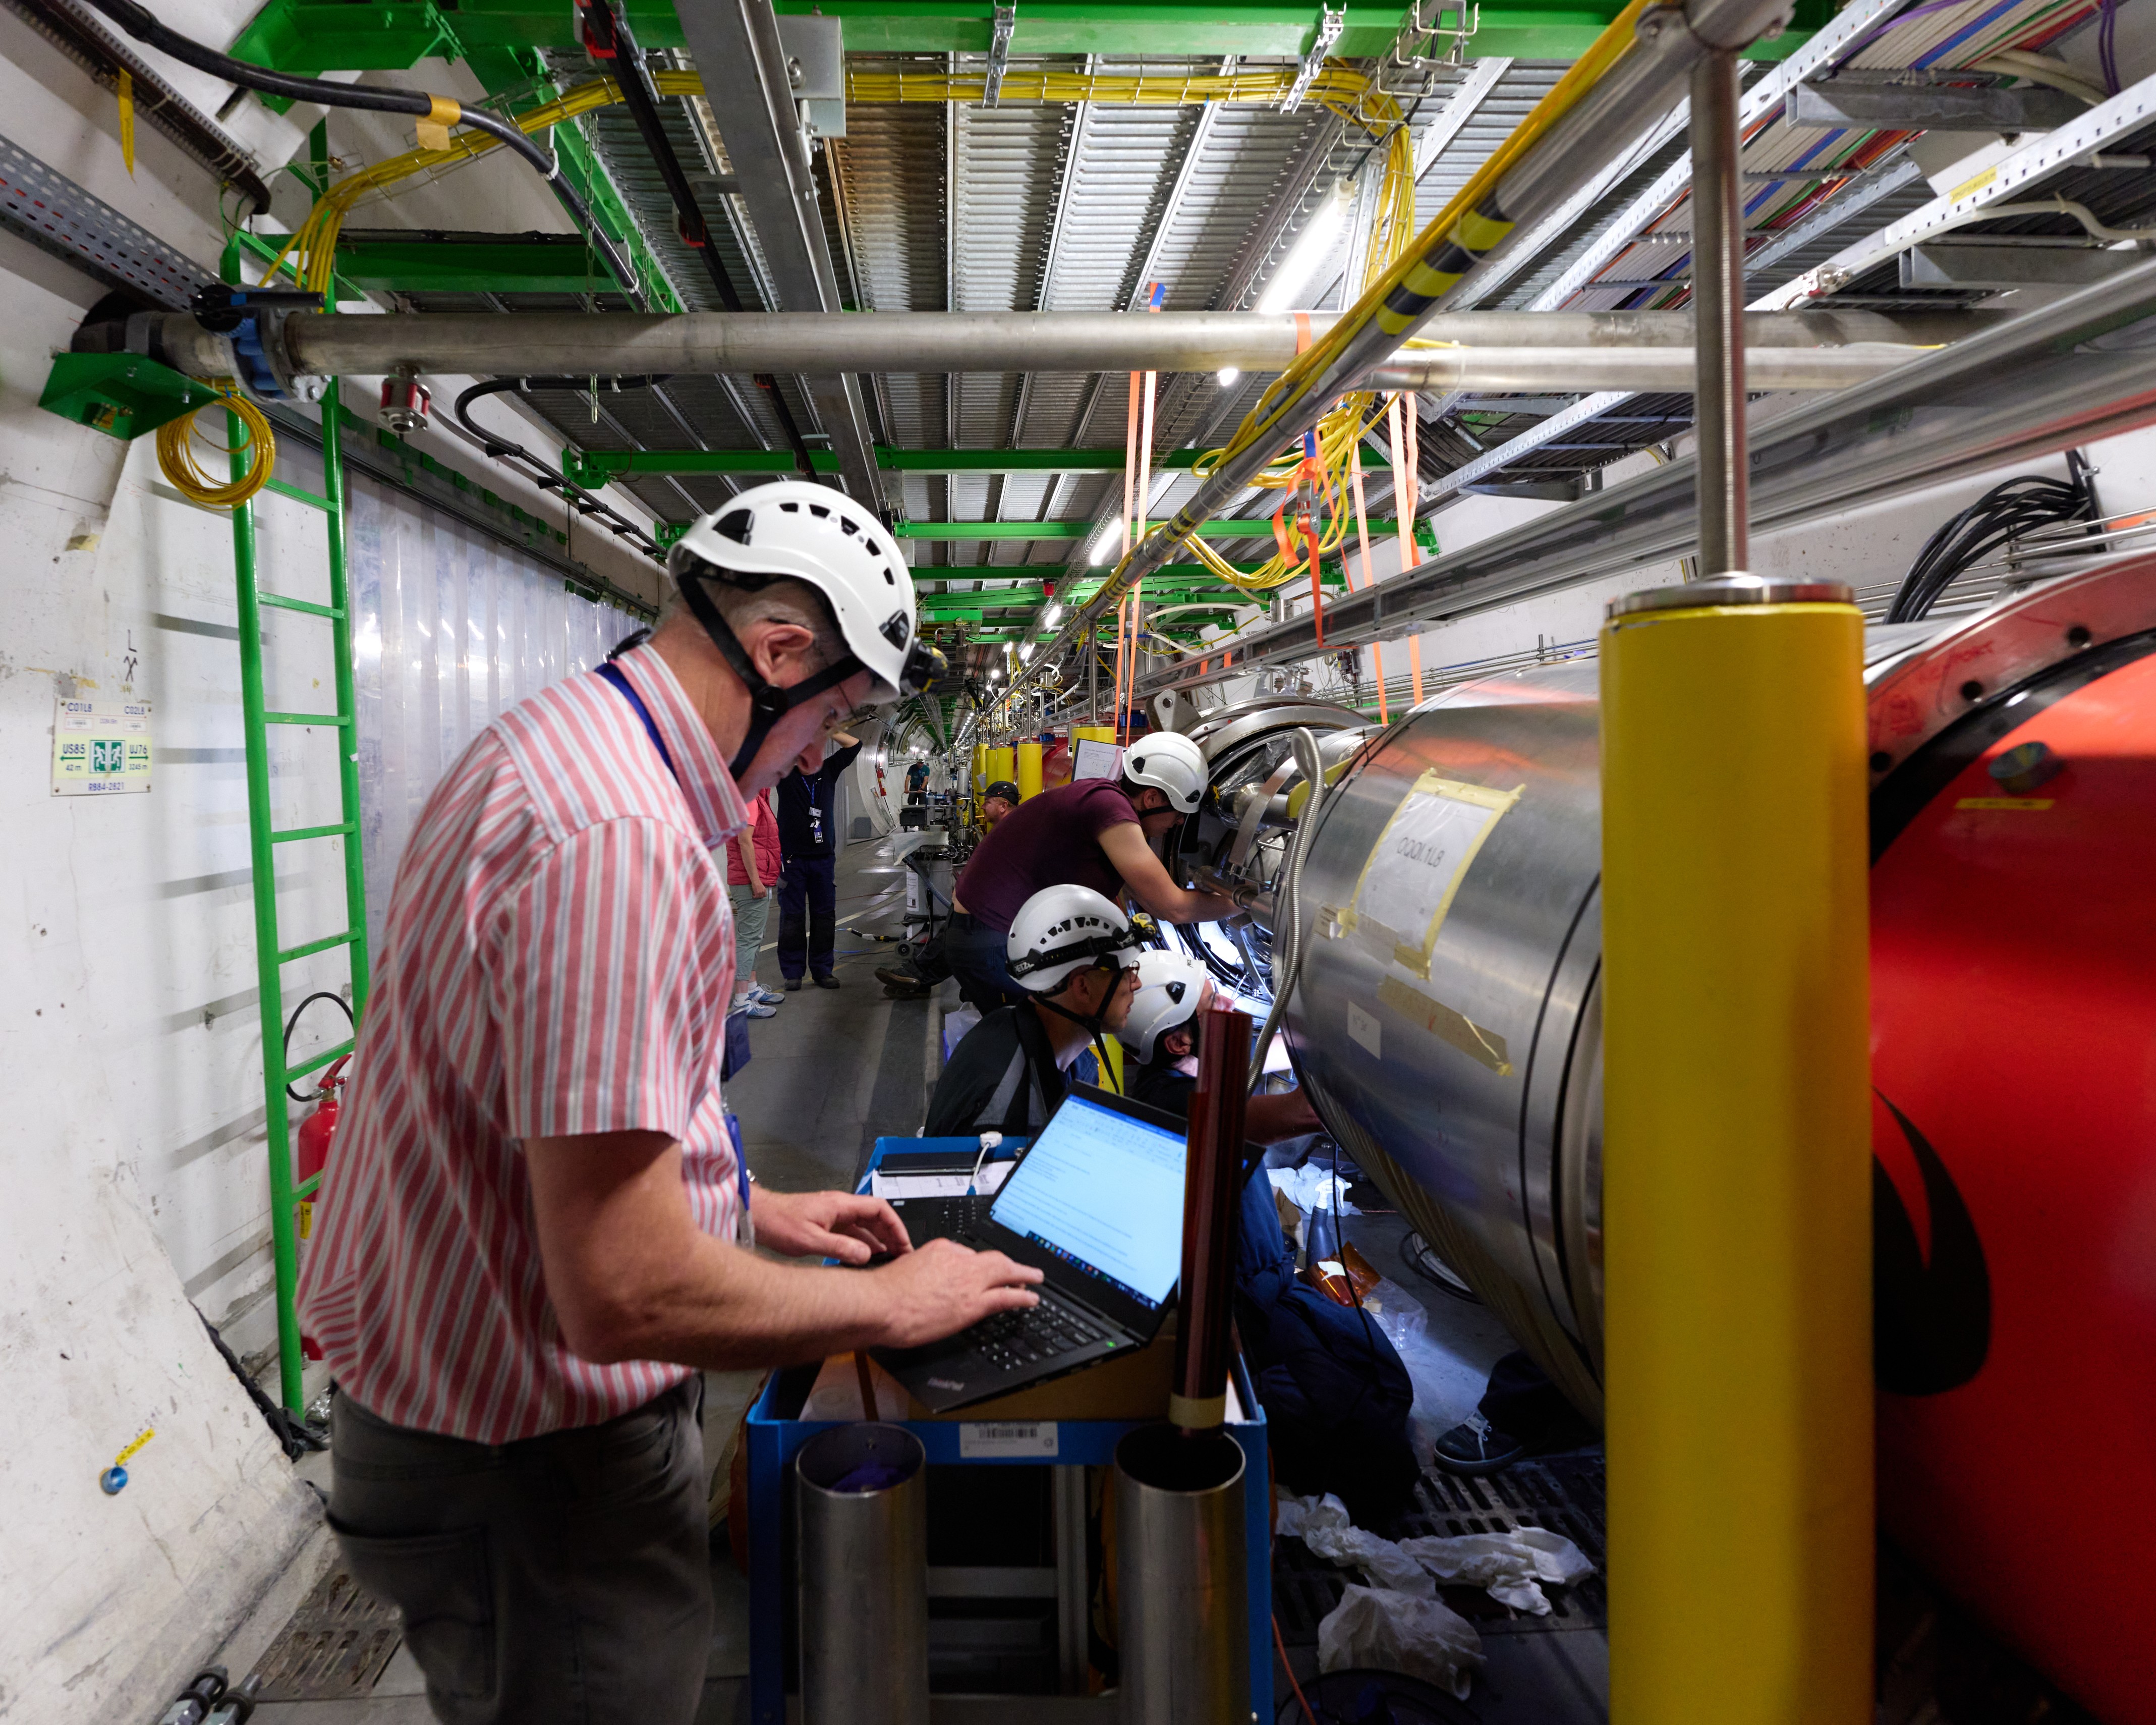 Paul Cruikshank, chef de l'équipe d'intervention sur le vide du LHC, avec son équipe, en train de démarrer le test de fuite sur le soufflet nouvellement installé.